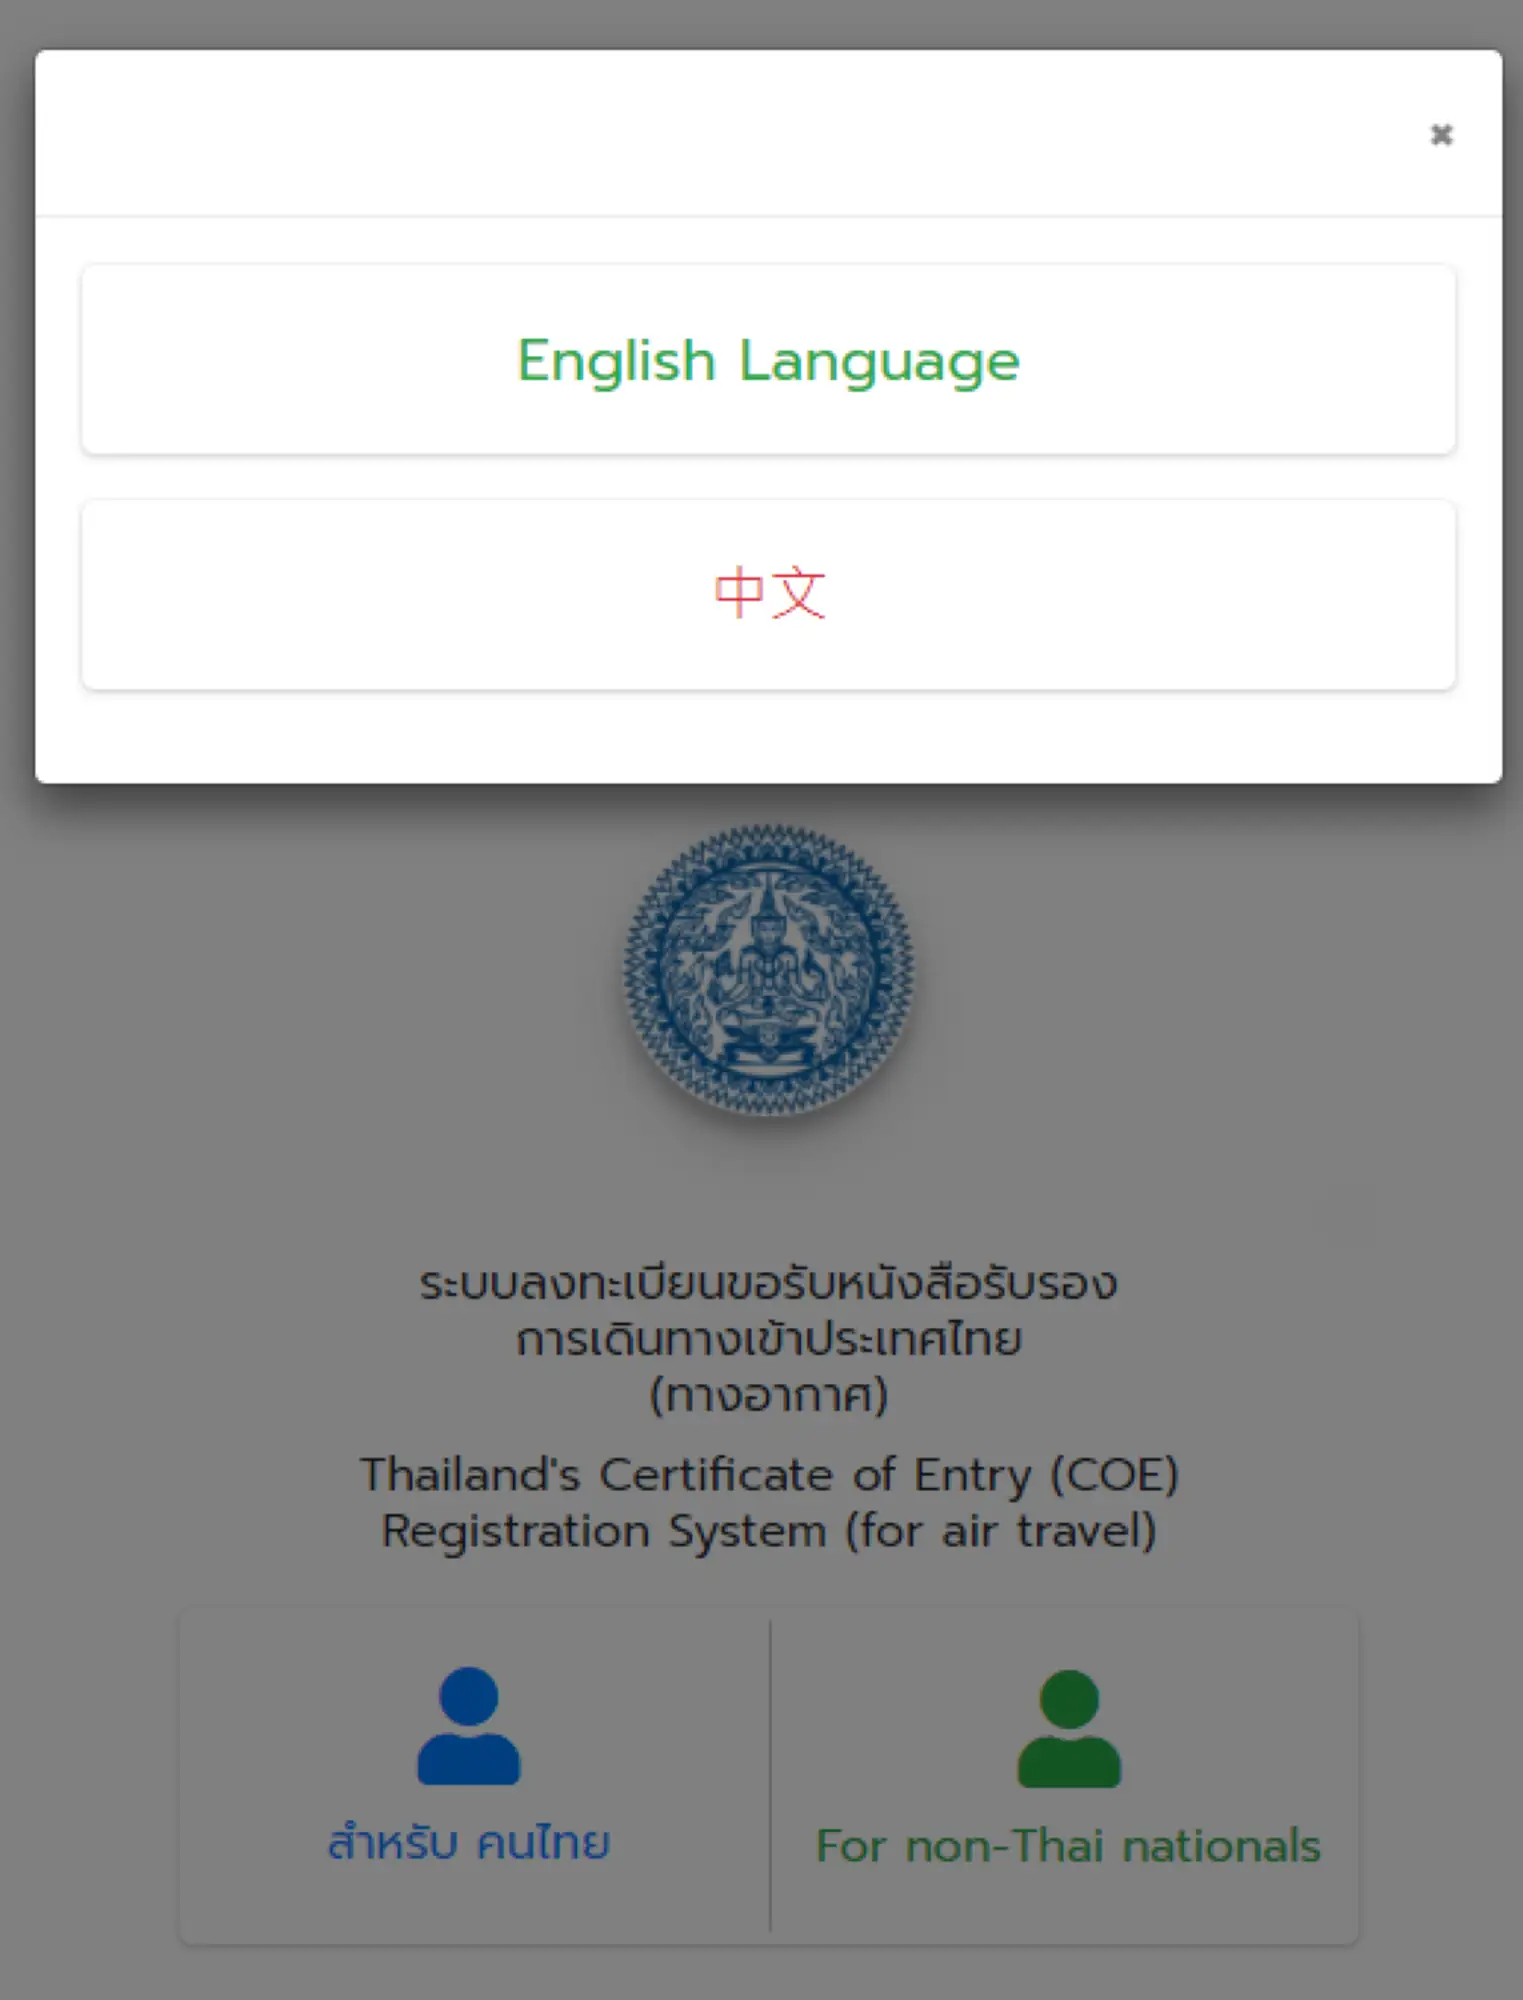 申請泰國入境許可證時，要注意中文介面僅限「泰王國設在中華人民共國的大使館與各城市的領事館」（圖片來源：擷取自coethailand.mfa.go.th）